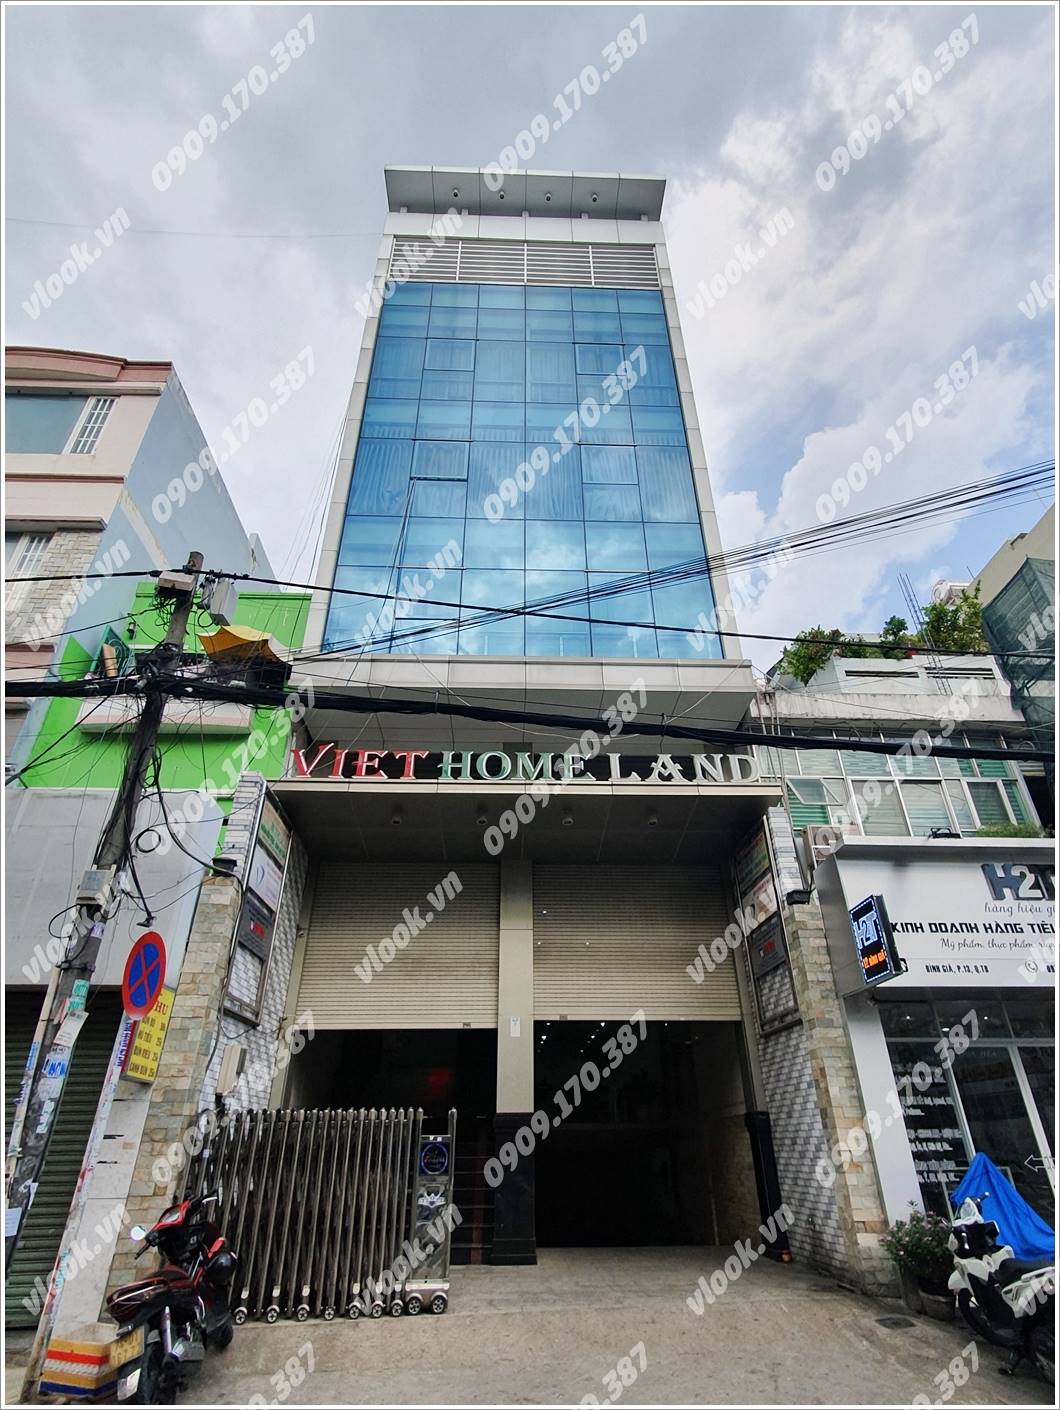 Cao ốc cho thuê Văn phòng Viet Home Land Building Bình Giã, Quận Tân Bình - vlook.vn